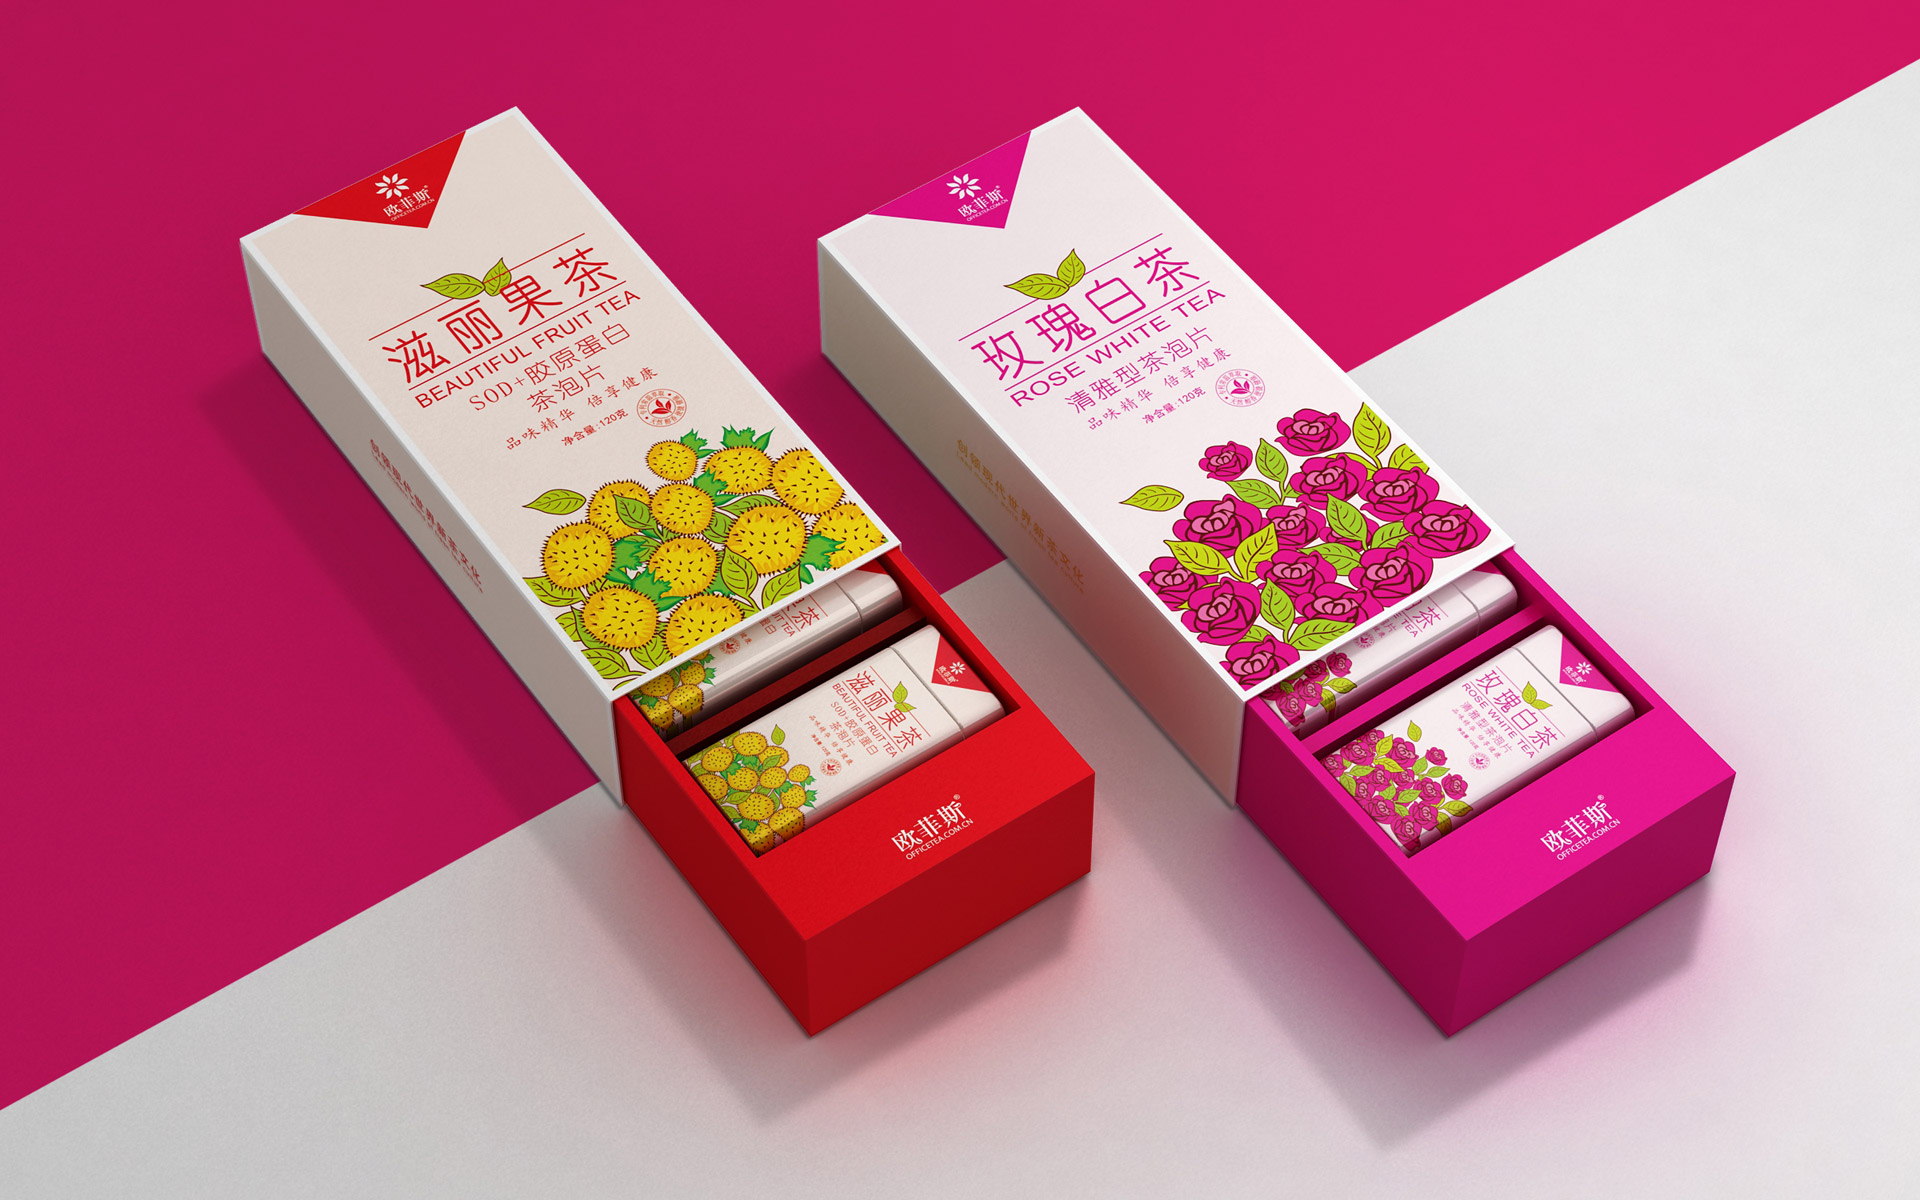 时尚茶叶包装盒设计，上海茶叶包装设计，茶叶包装设计公司，花果茶包装设计，固体茶饮料包装设计公司，上海包装设计公司。